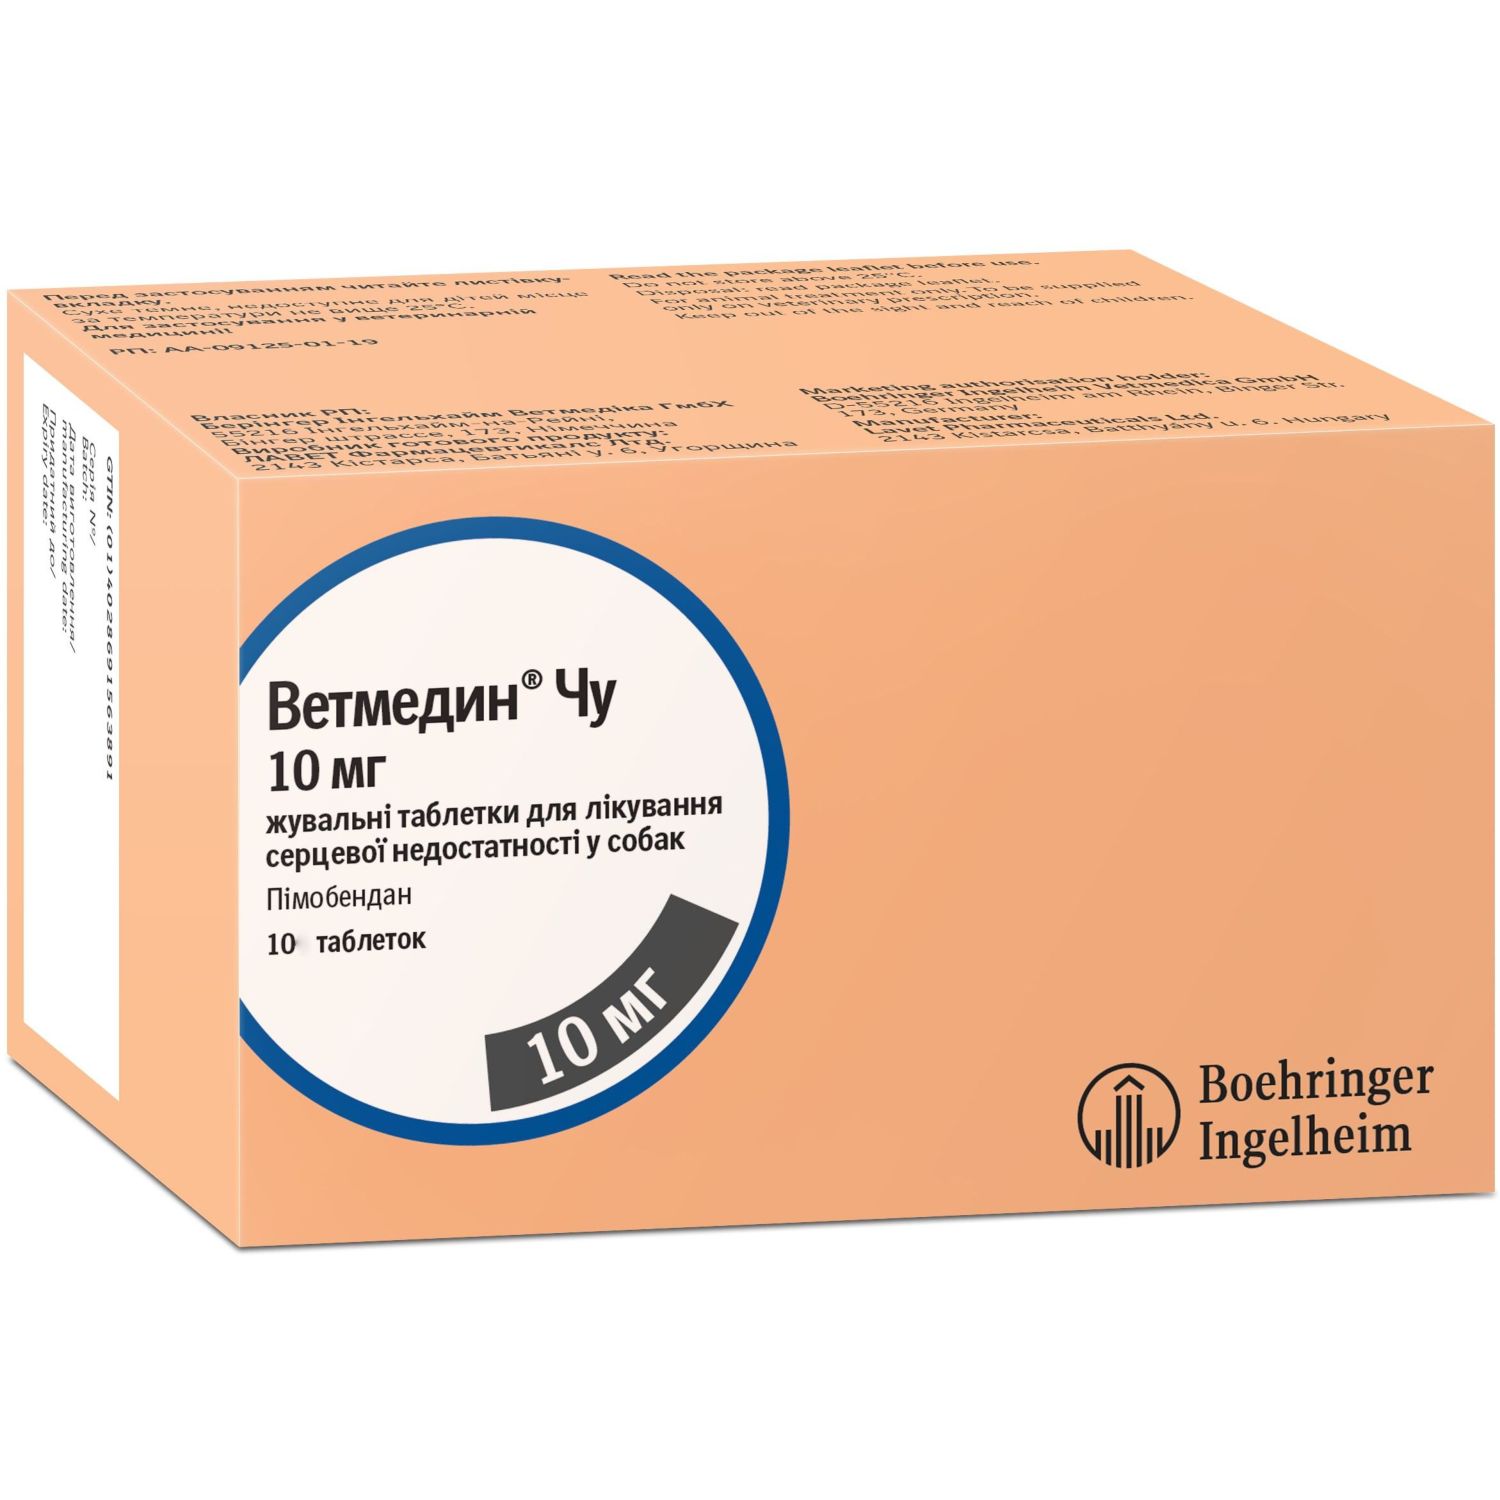 Жевательные таблетки Boehringer Ingelheim Ветмедин Чу, 10 мг, 10 шт. - фото 1